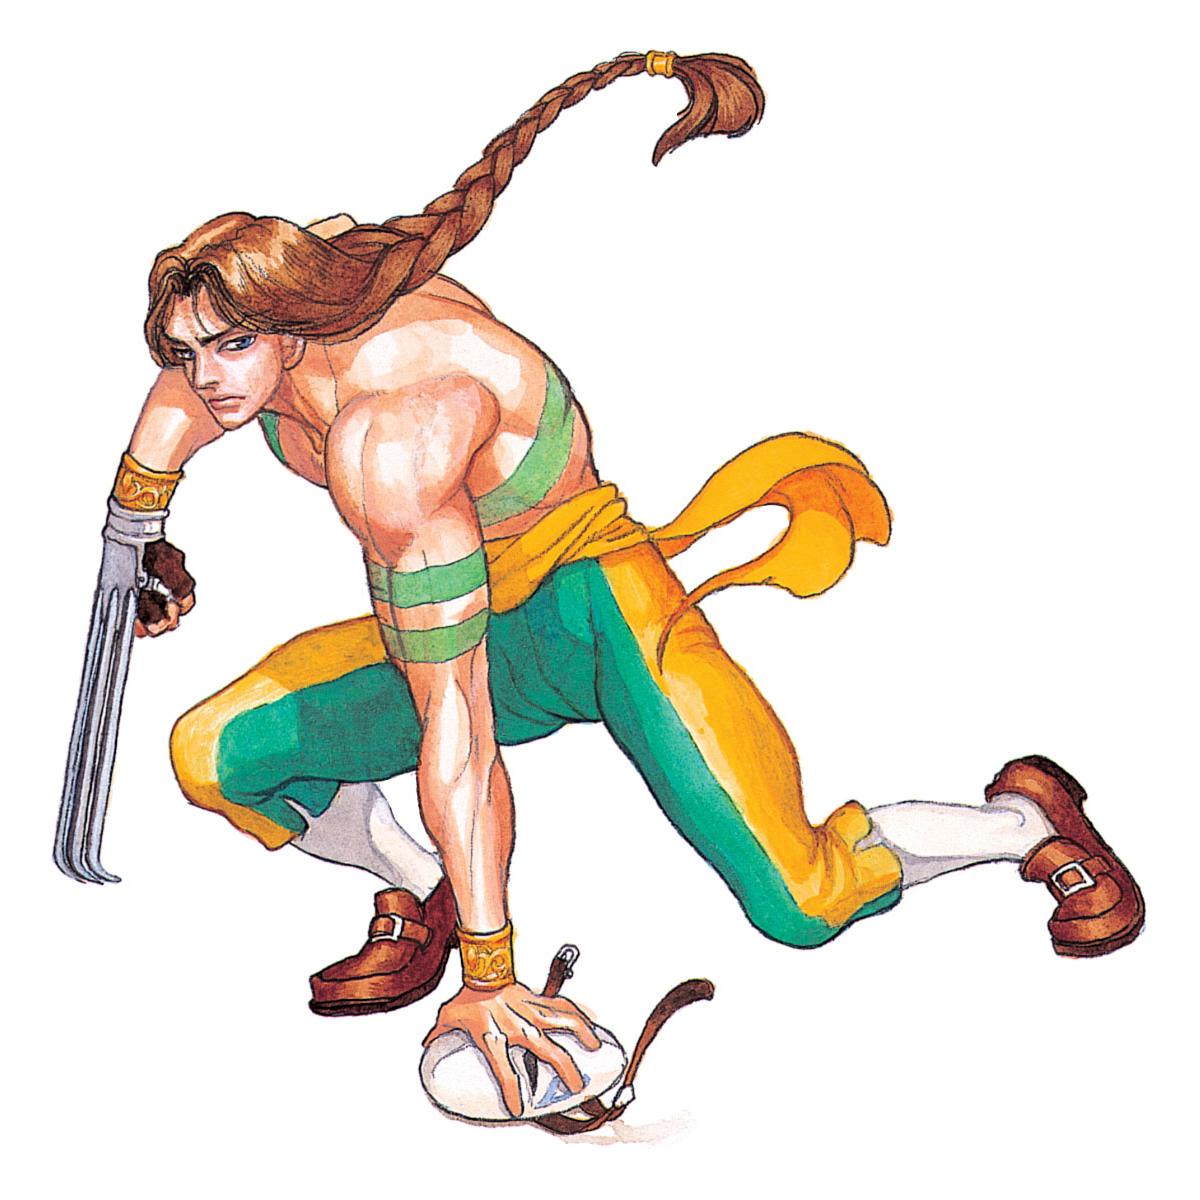 Vega artwork #8, Street Fighter 2  Street fighter, Street fighter  characters, Super street fighter